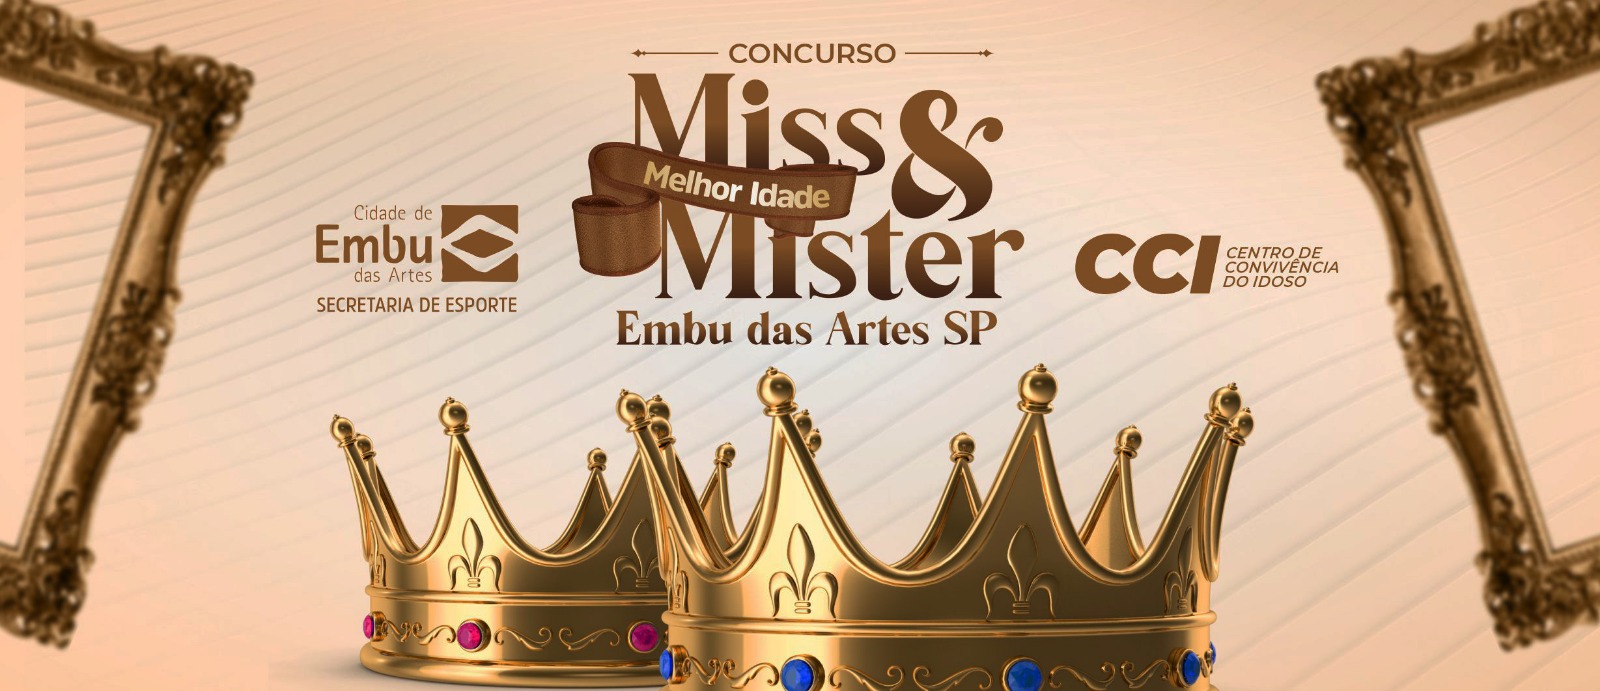 Concurso 'Miss & Mister Melhor Idade Embu das Artes' escolhe finalistas no sábado (7/10)